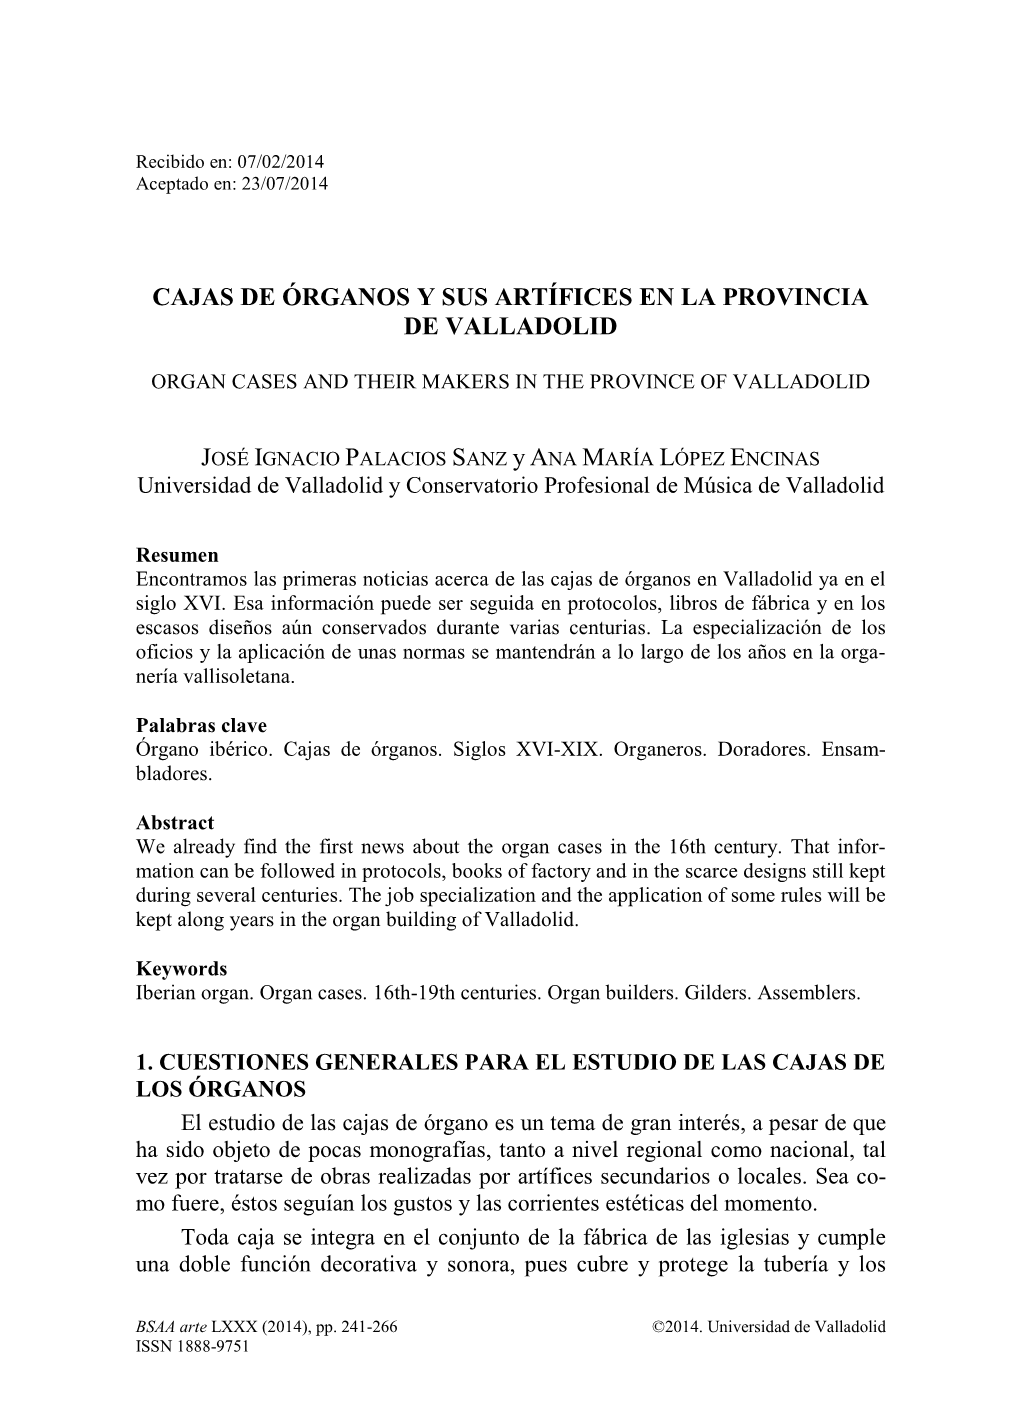 Cajas De Órganos Y Sus Artífices En La Provincia De Valladolid